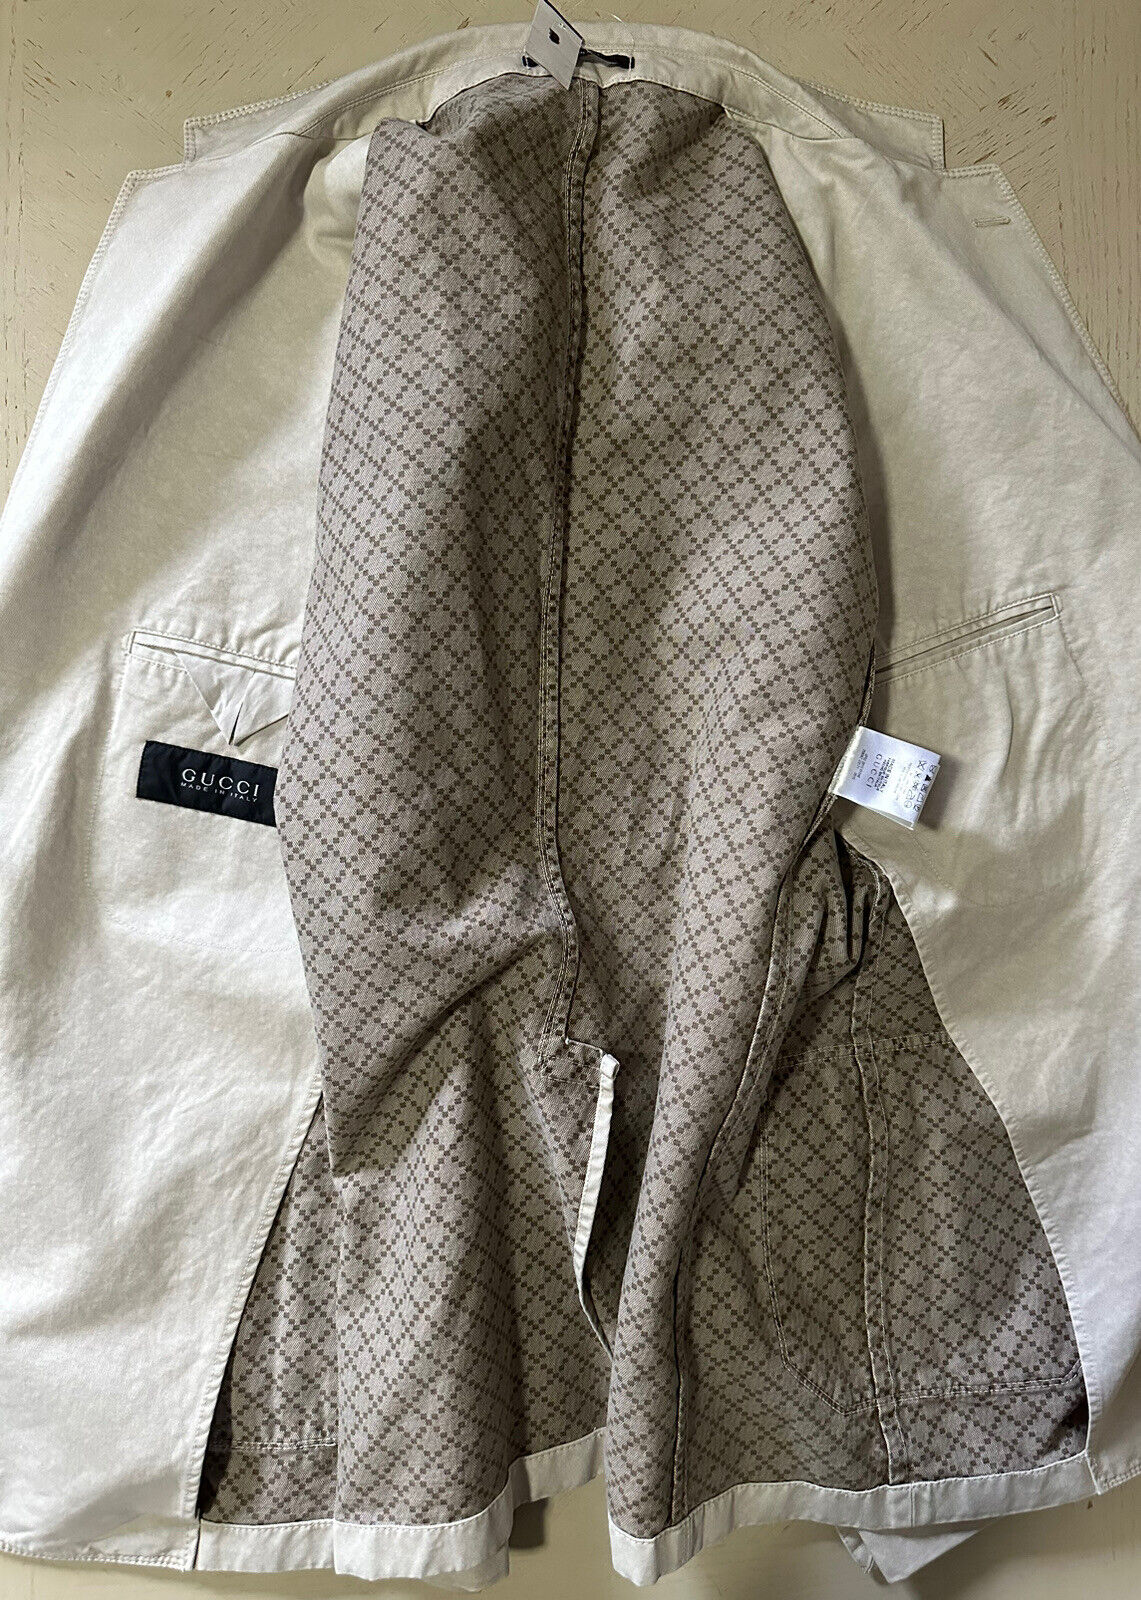 Мужской спортивный пиджак Gucci цвета слоновой кости 1580 долларов NWT 44R US/54R EU Италия